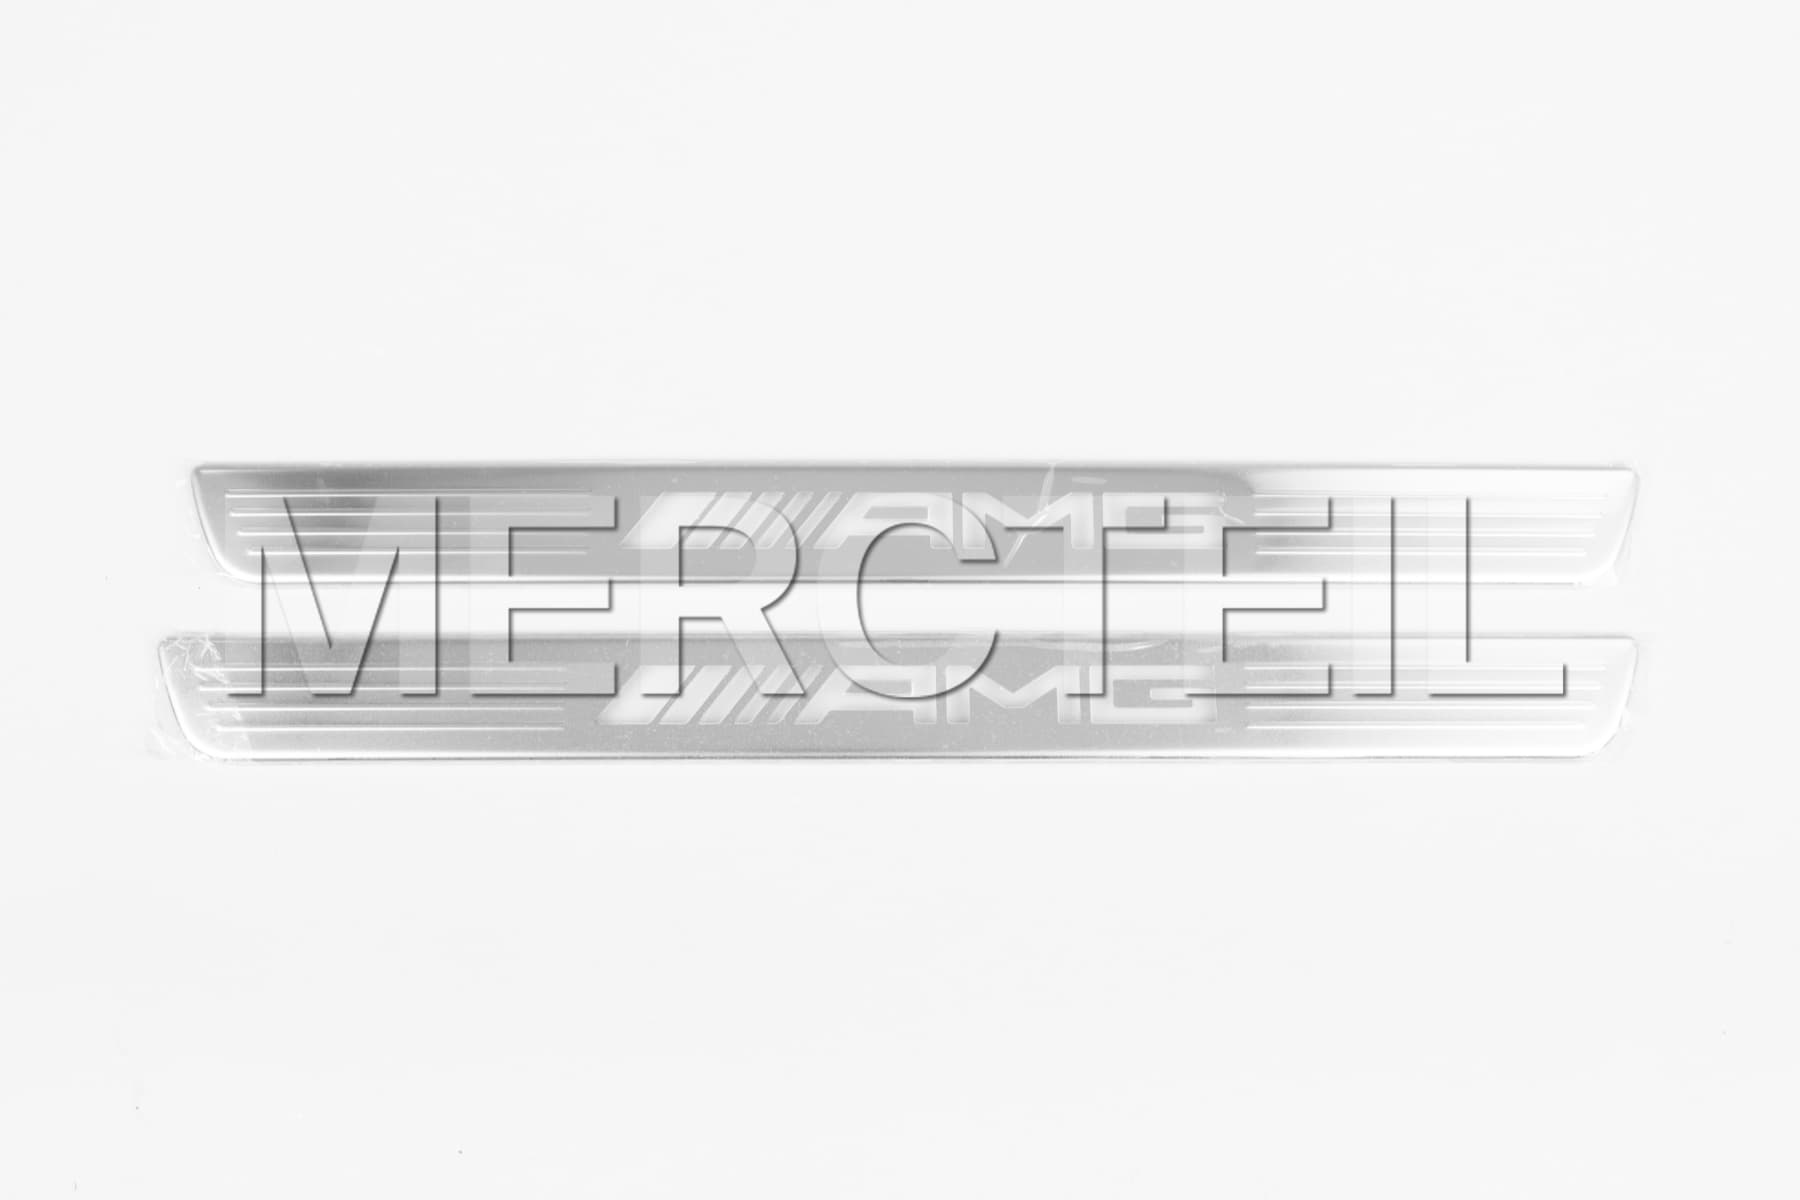 AMG Silberne Wechselcover für Beleuchtete Einstiegsleiste Original Mercedes Benz (Teilenummer: A1776804307)